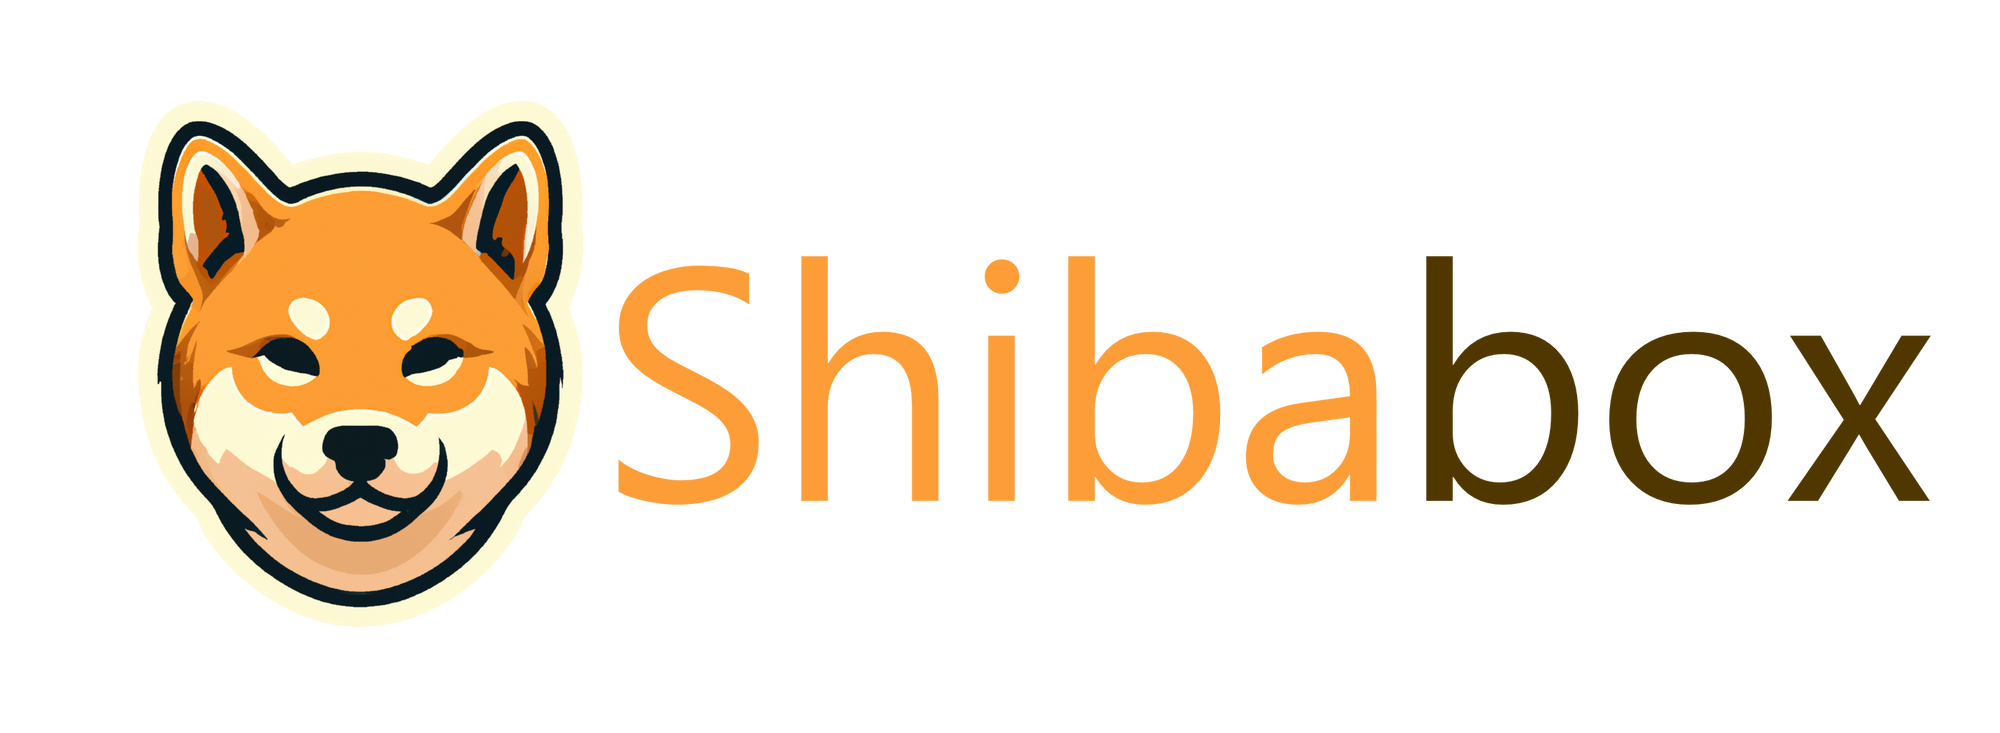 The Shibabox